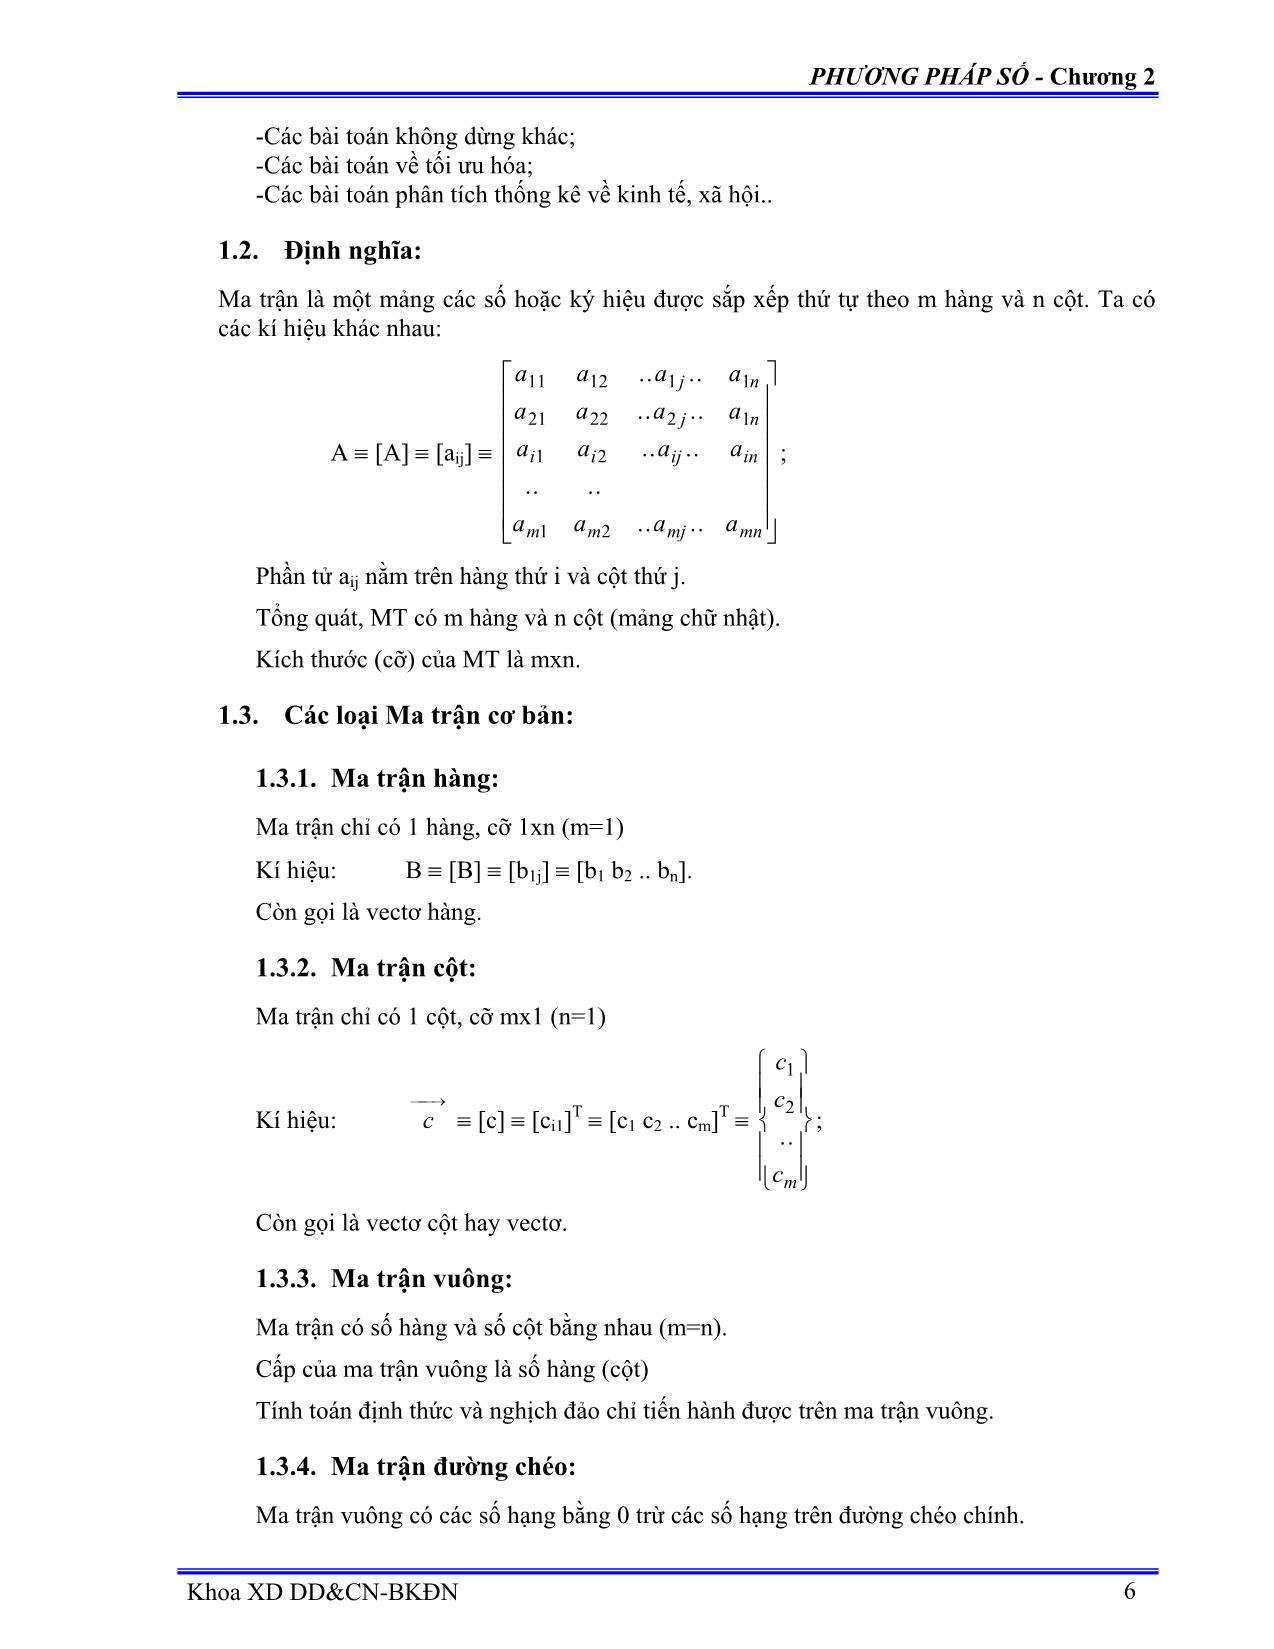 Bài giảng Bổ túc các thuật toán về ma trận và hệ phương trình trang 3